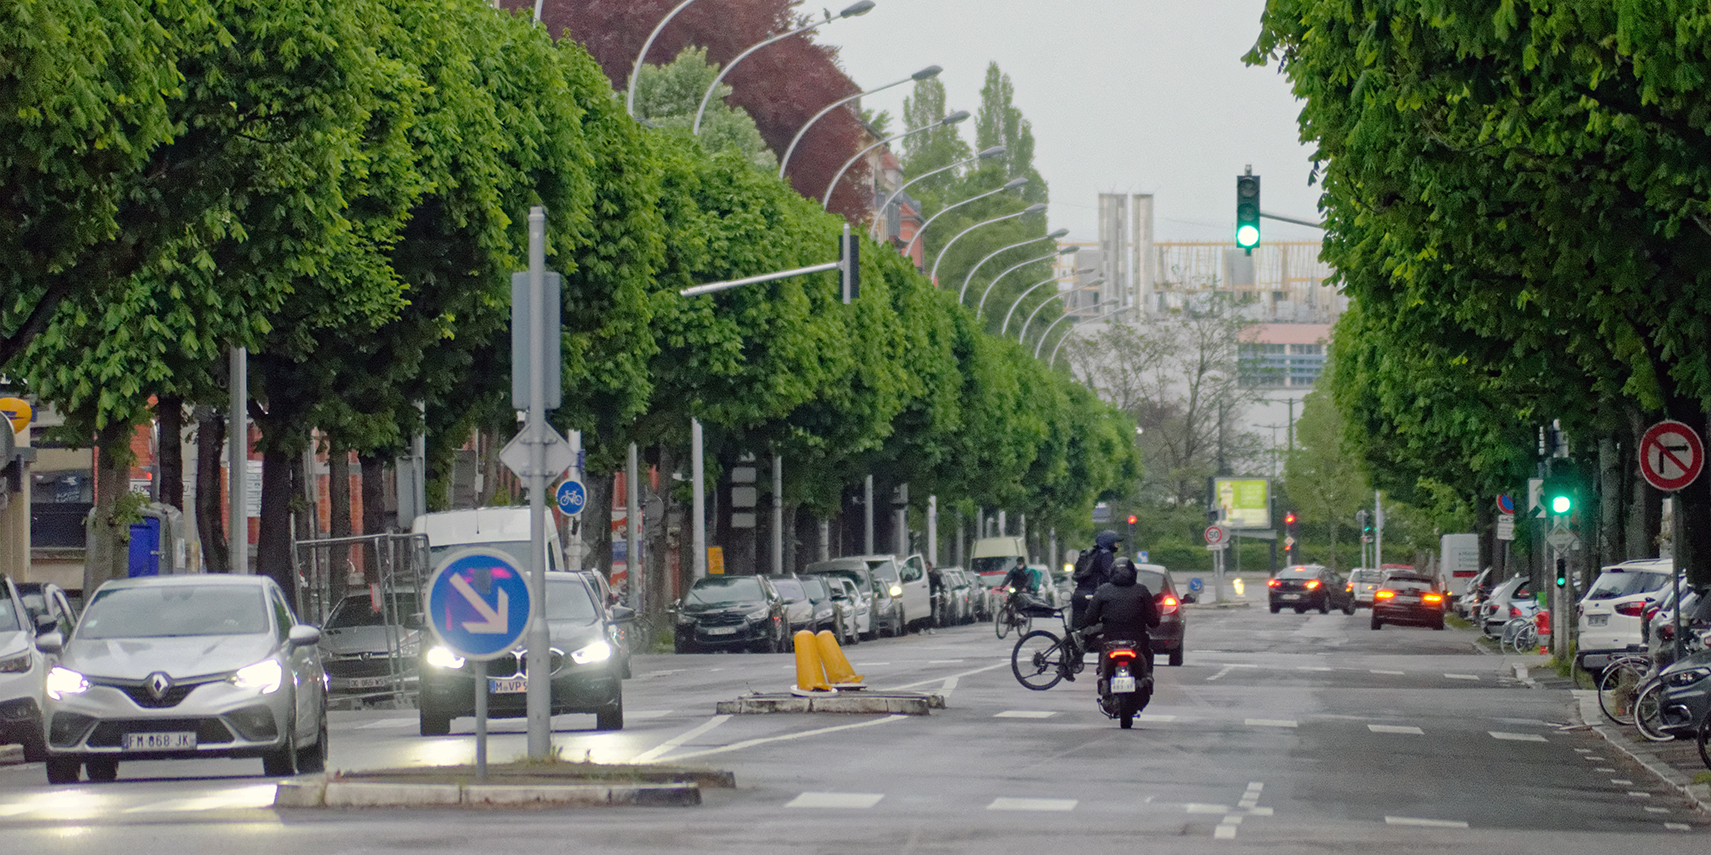 Transports : Strasbourg tente de convaincre les entreprises de polluer moins